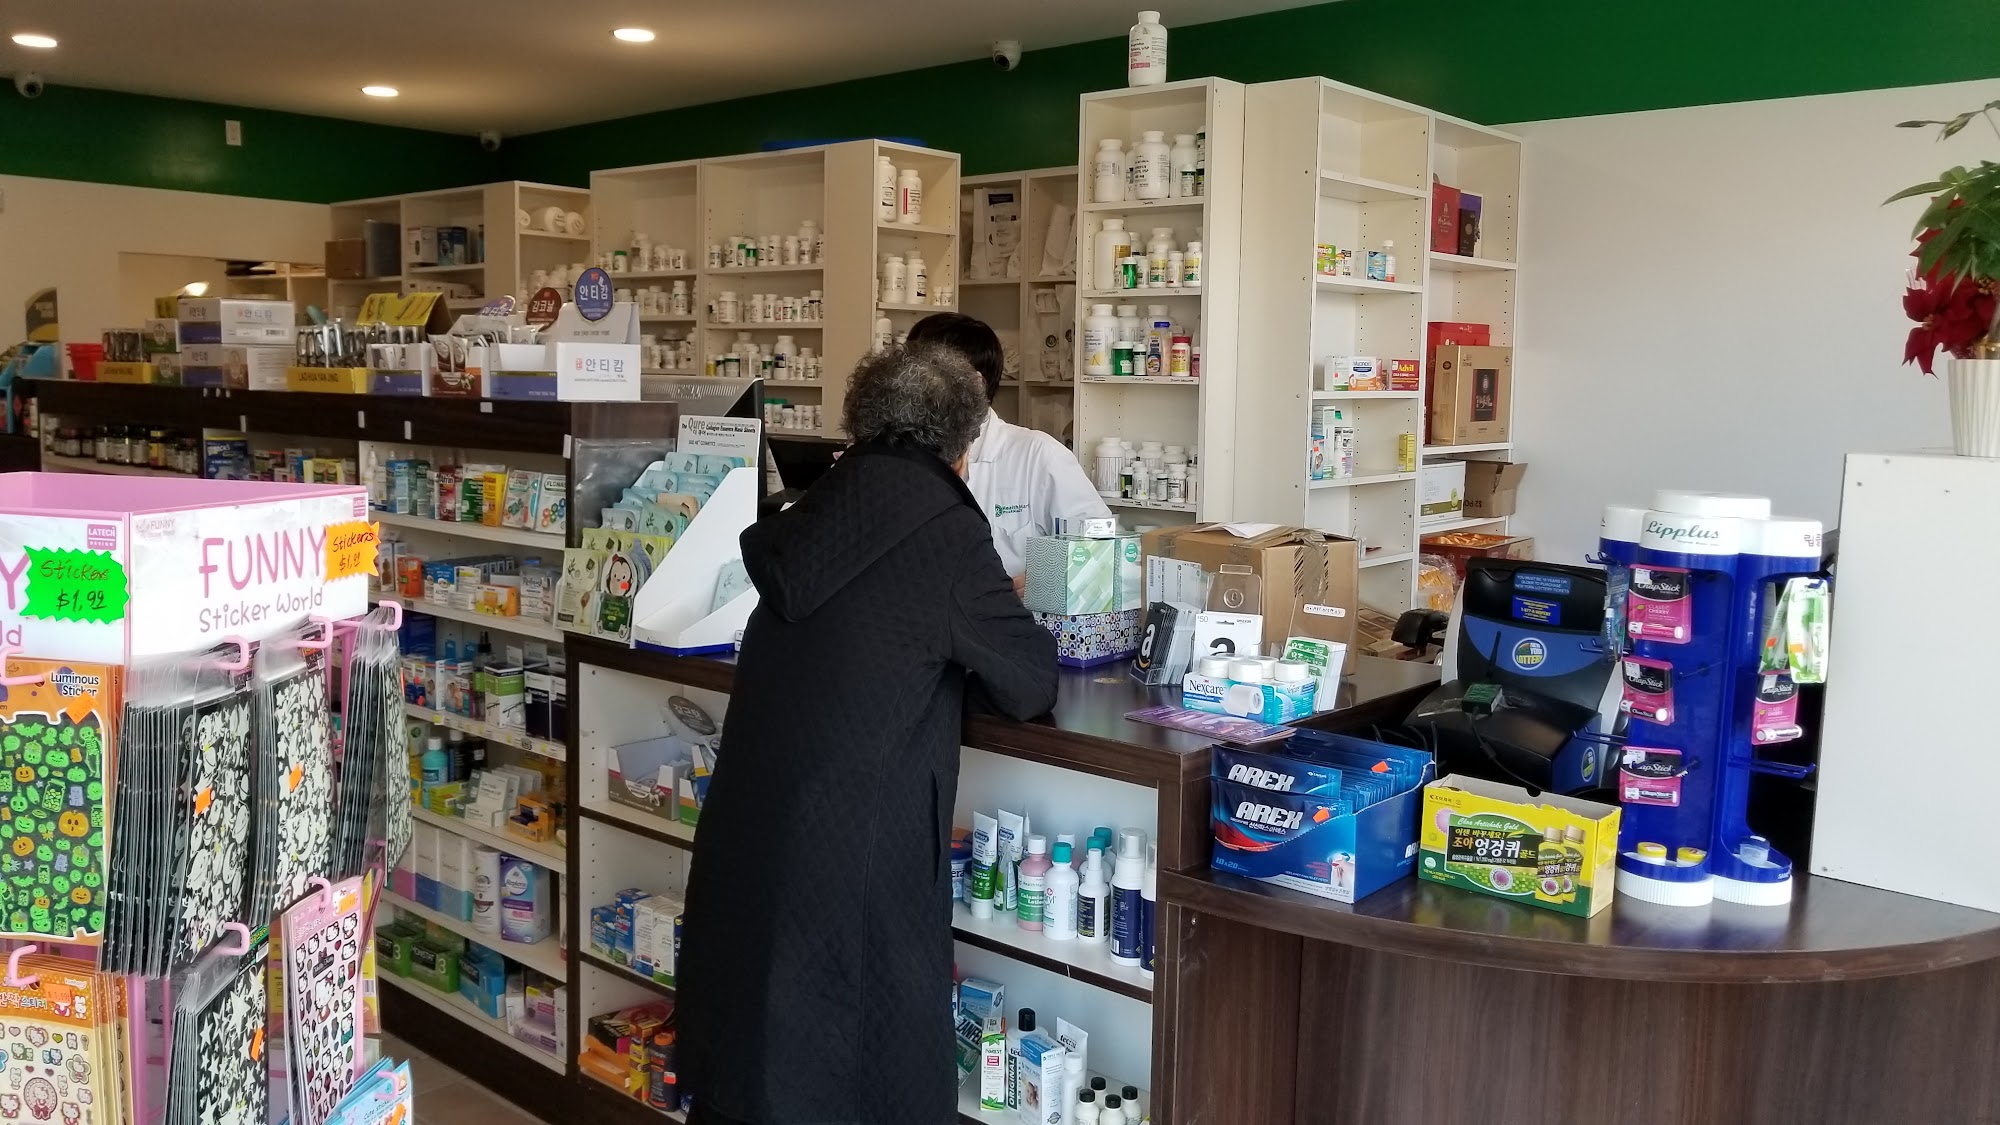 Moduna Pharmacy | Pharmacy in little neck | 뉴욕 약국, 퀸즈 약국, 플러싱 약국, 리틀넥 약국